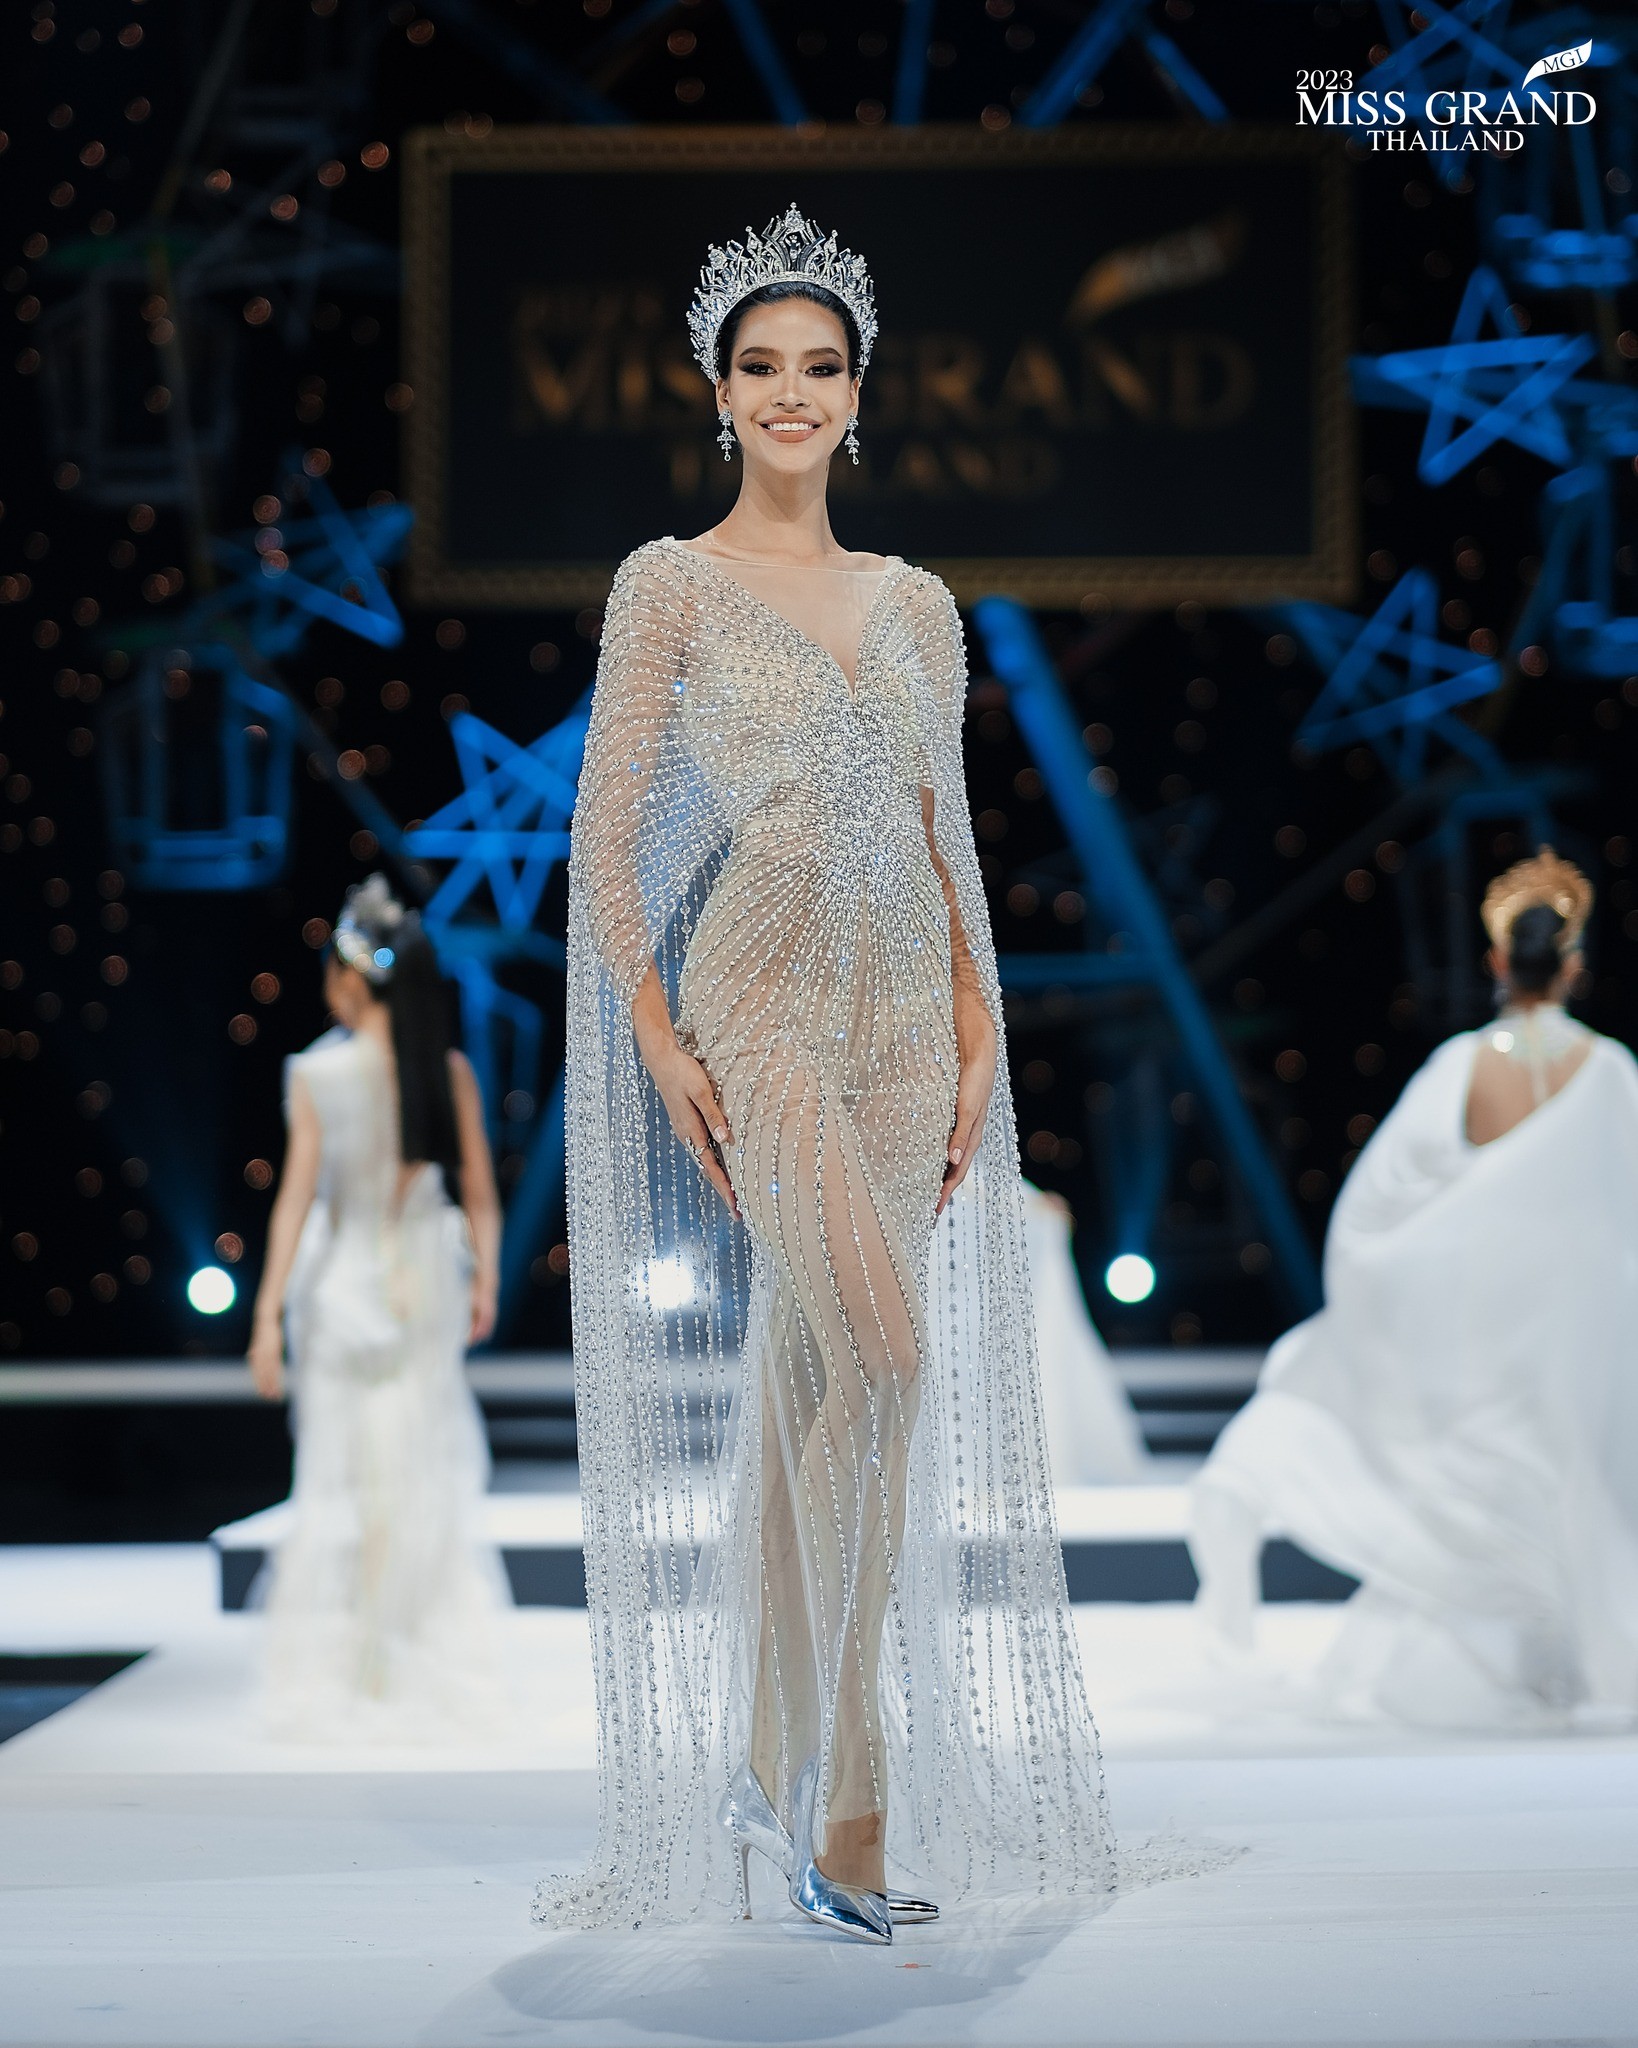 Váy áo cắt xẻ phản cảm tràn ngập Hoa hậu Hòa bình Thái Lan - Ảnh 6.